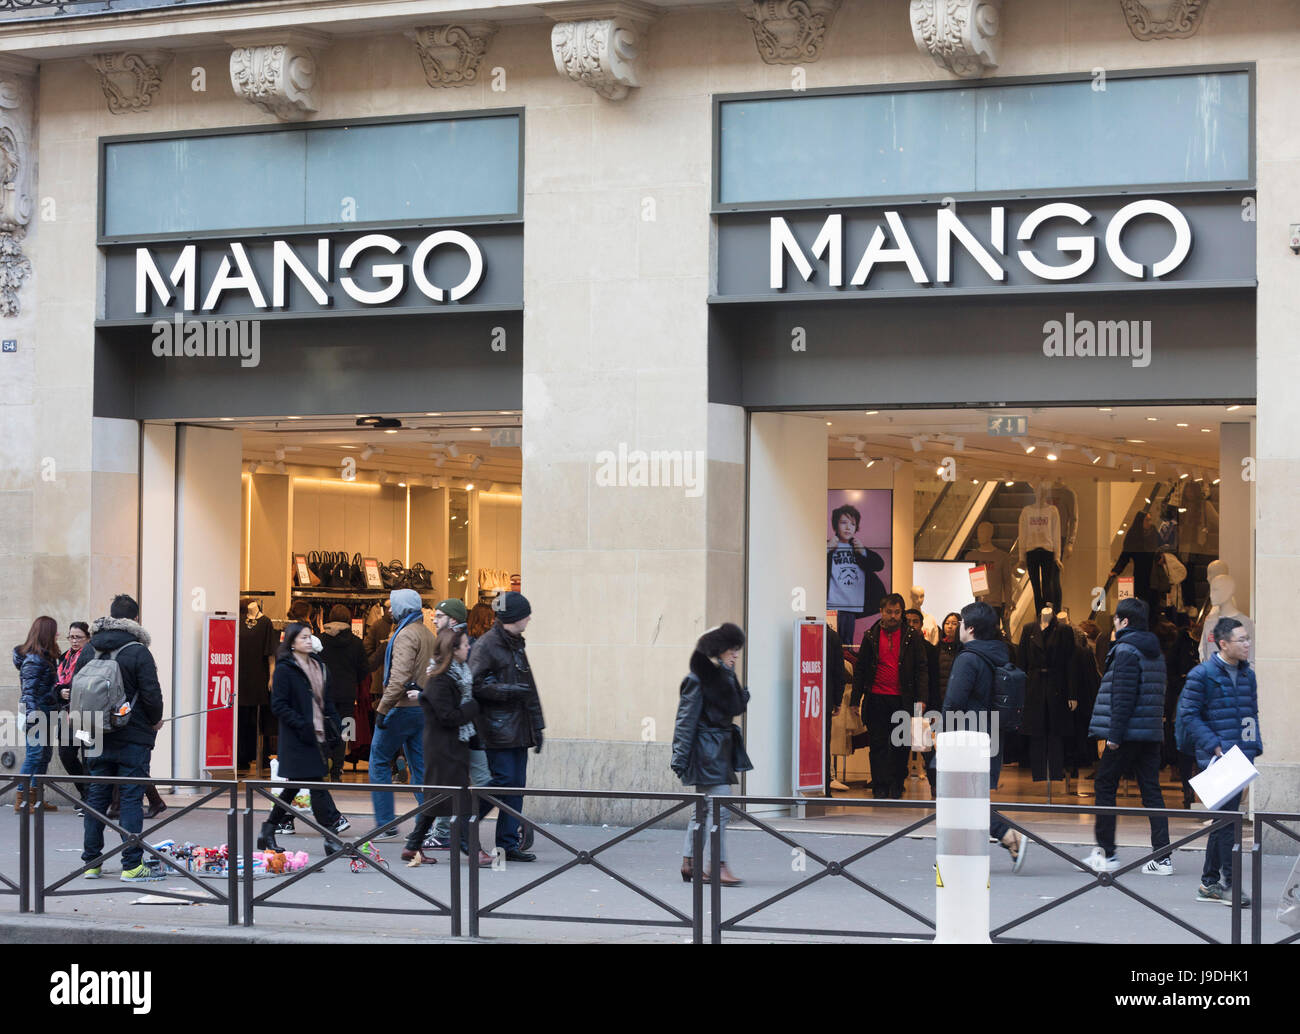 Mango clothing store, Paris, France Stock Photo - Alamy